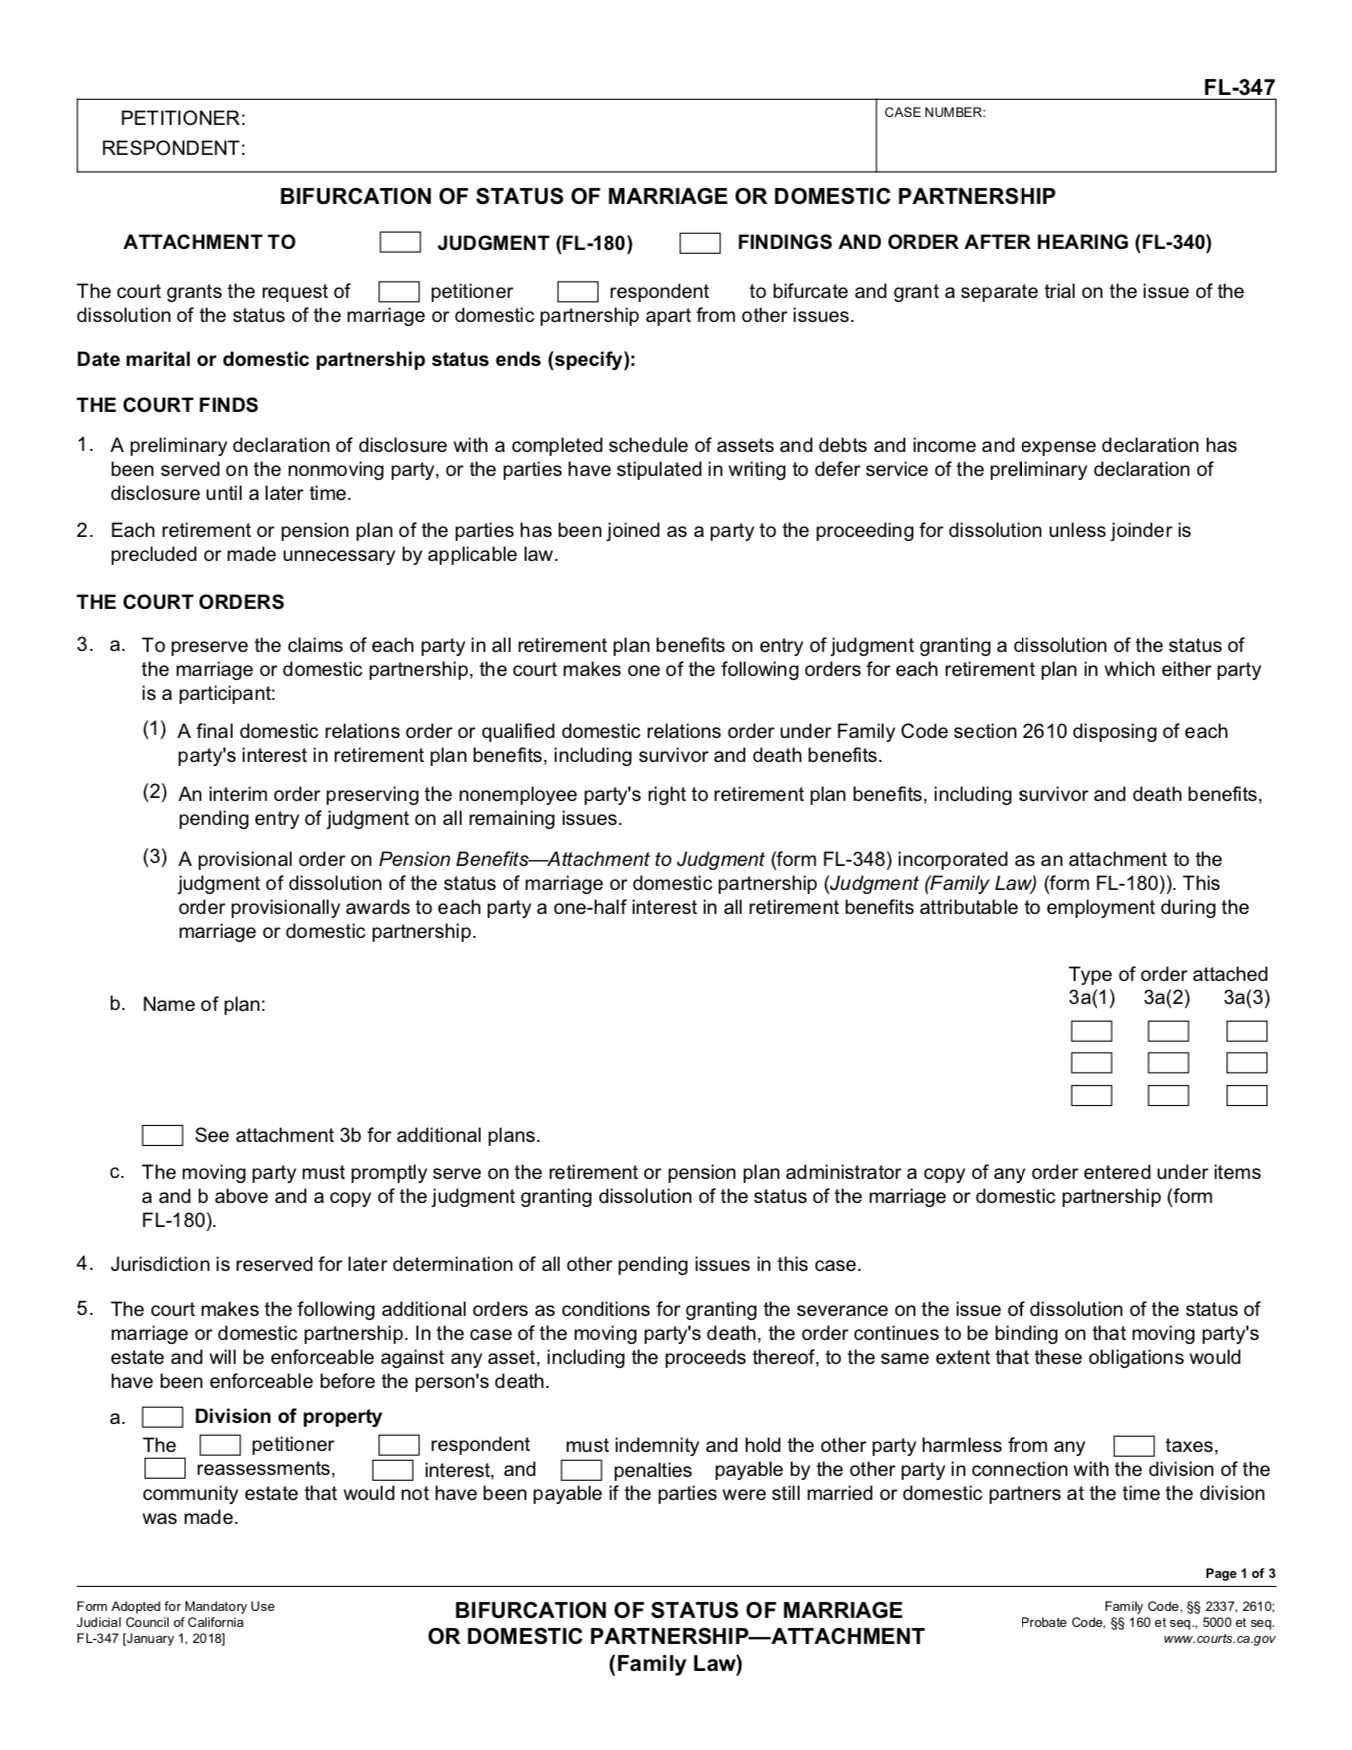 FL-37 judicial council form